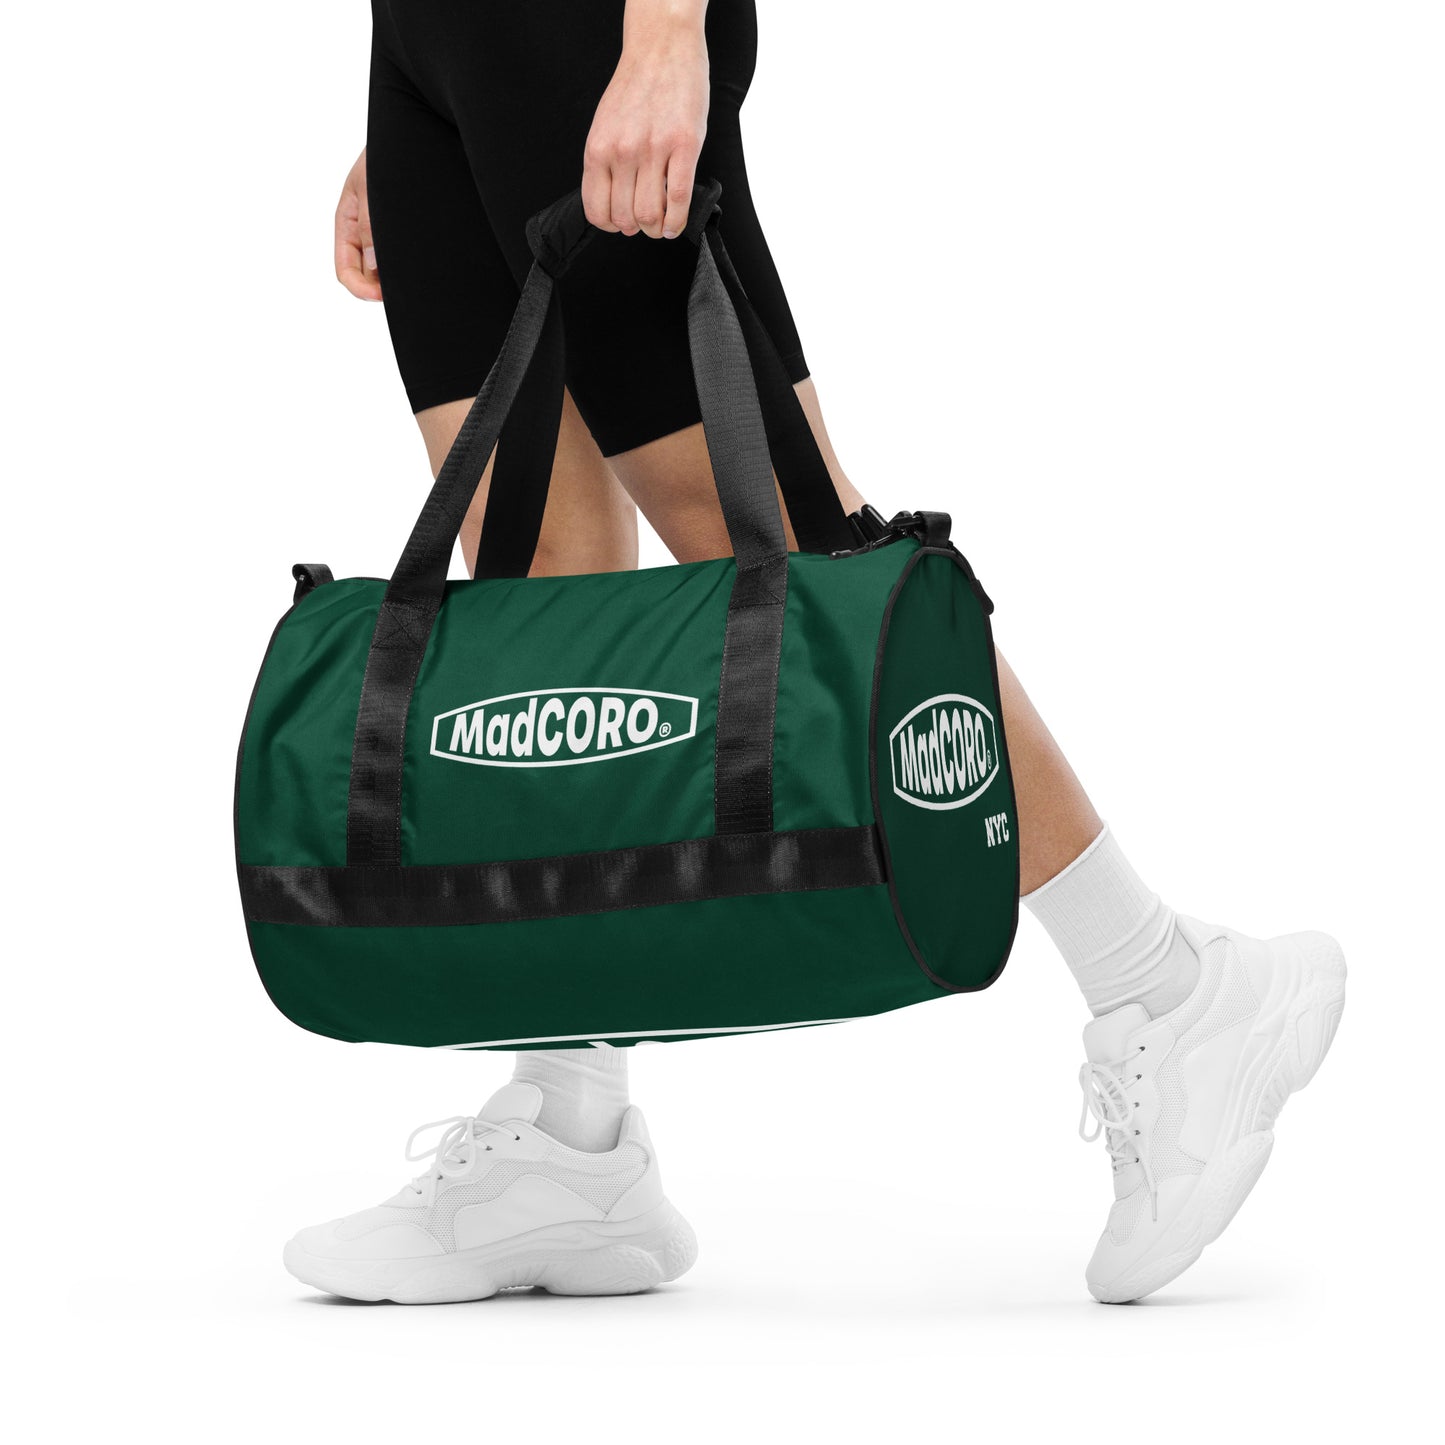 MadCoro All-over print gym bag- racer green